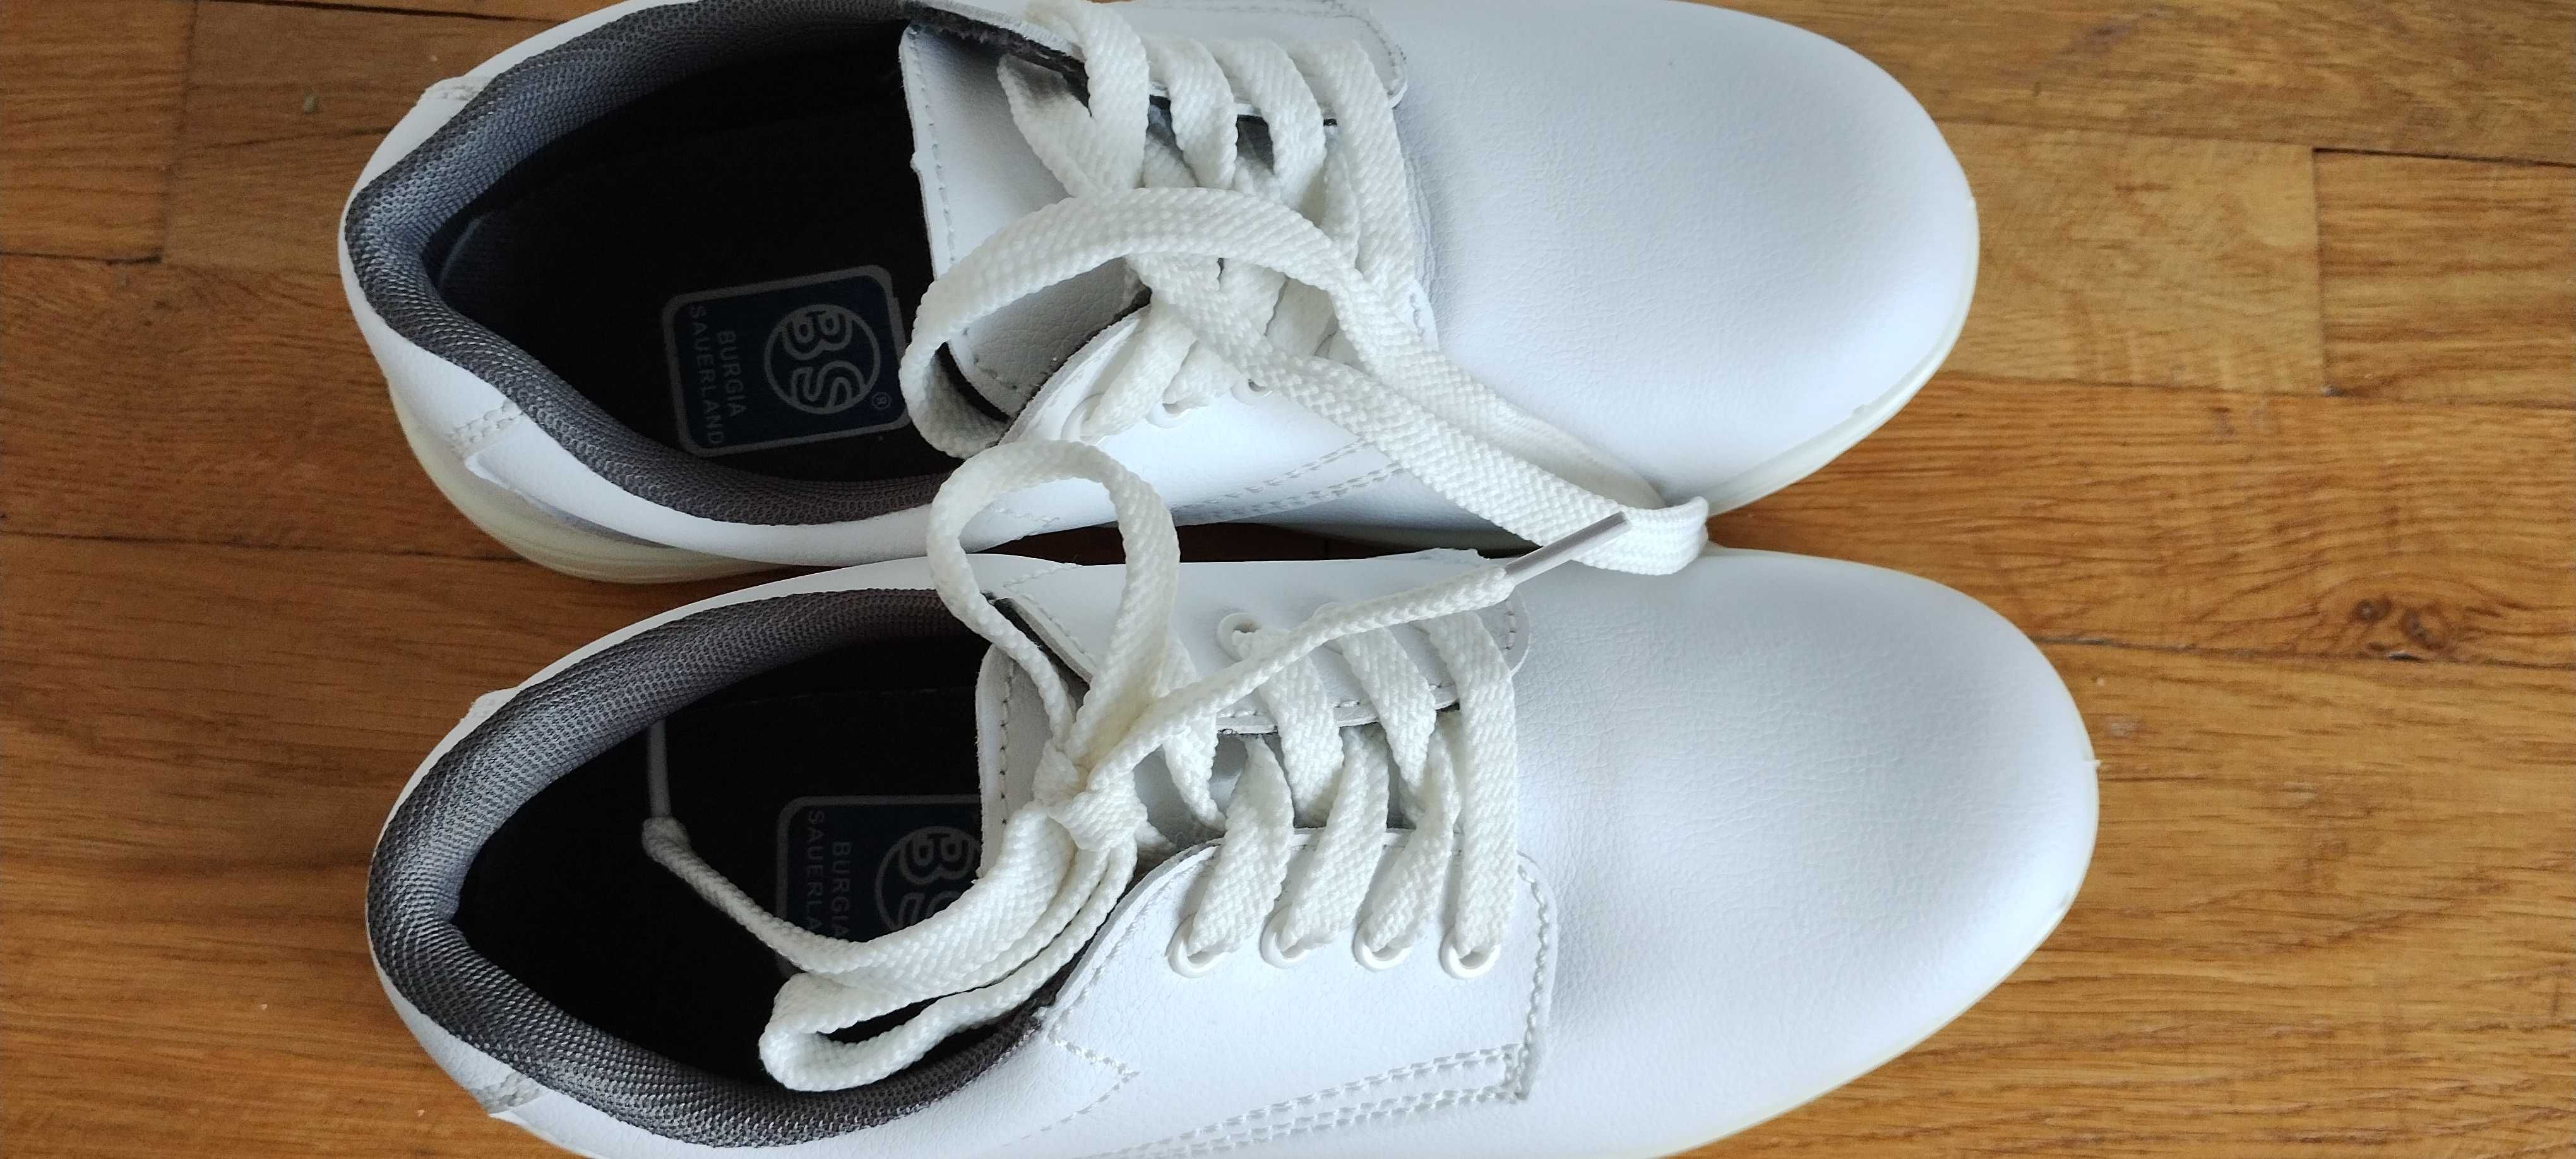 Burgia Sauerland białe buty ochronne 38 39